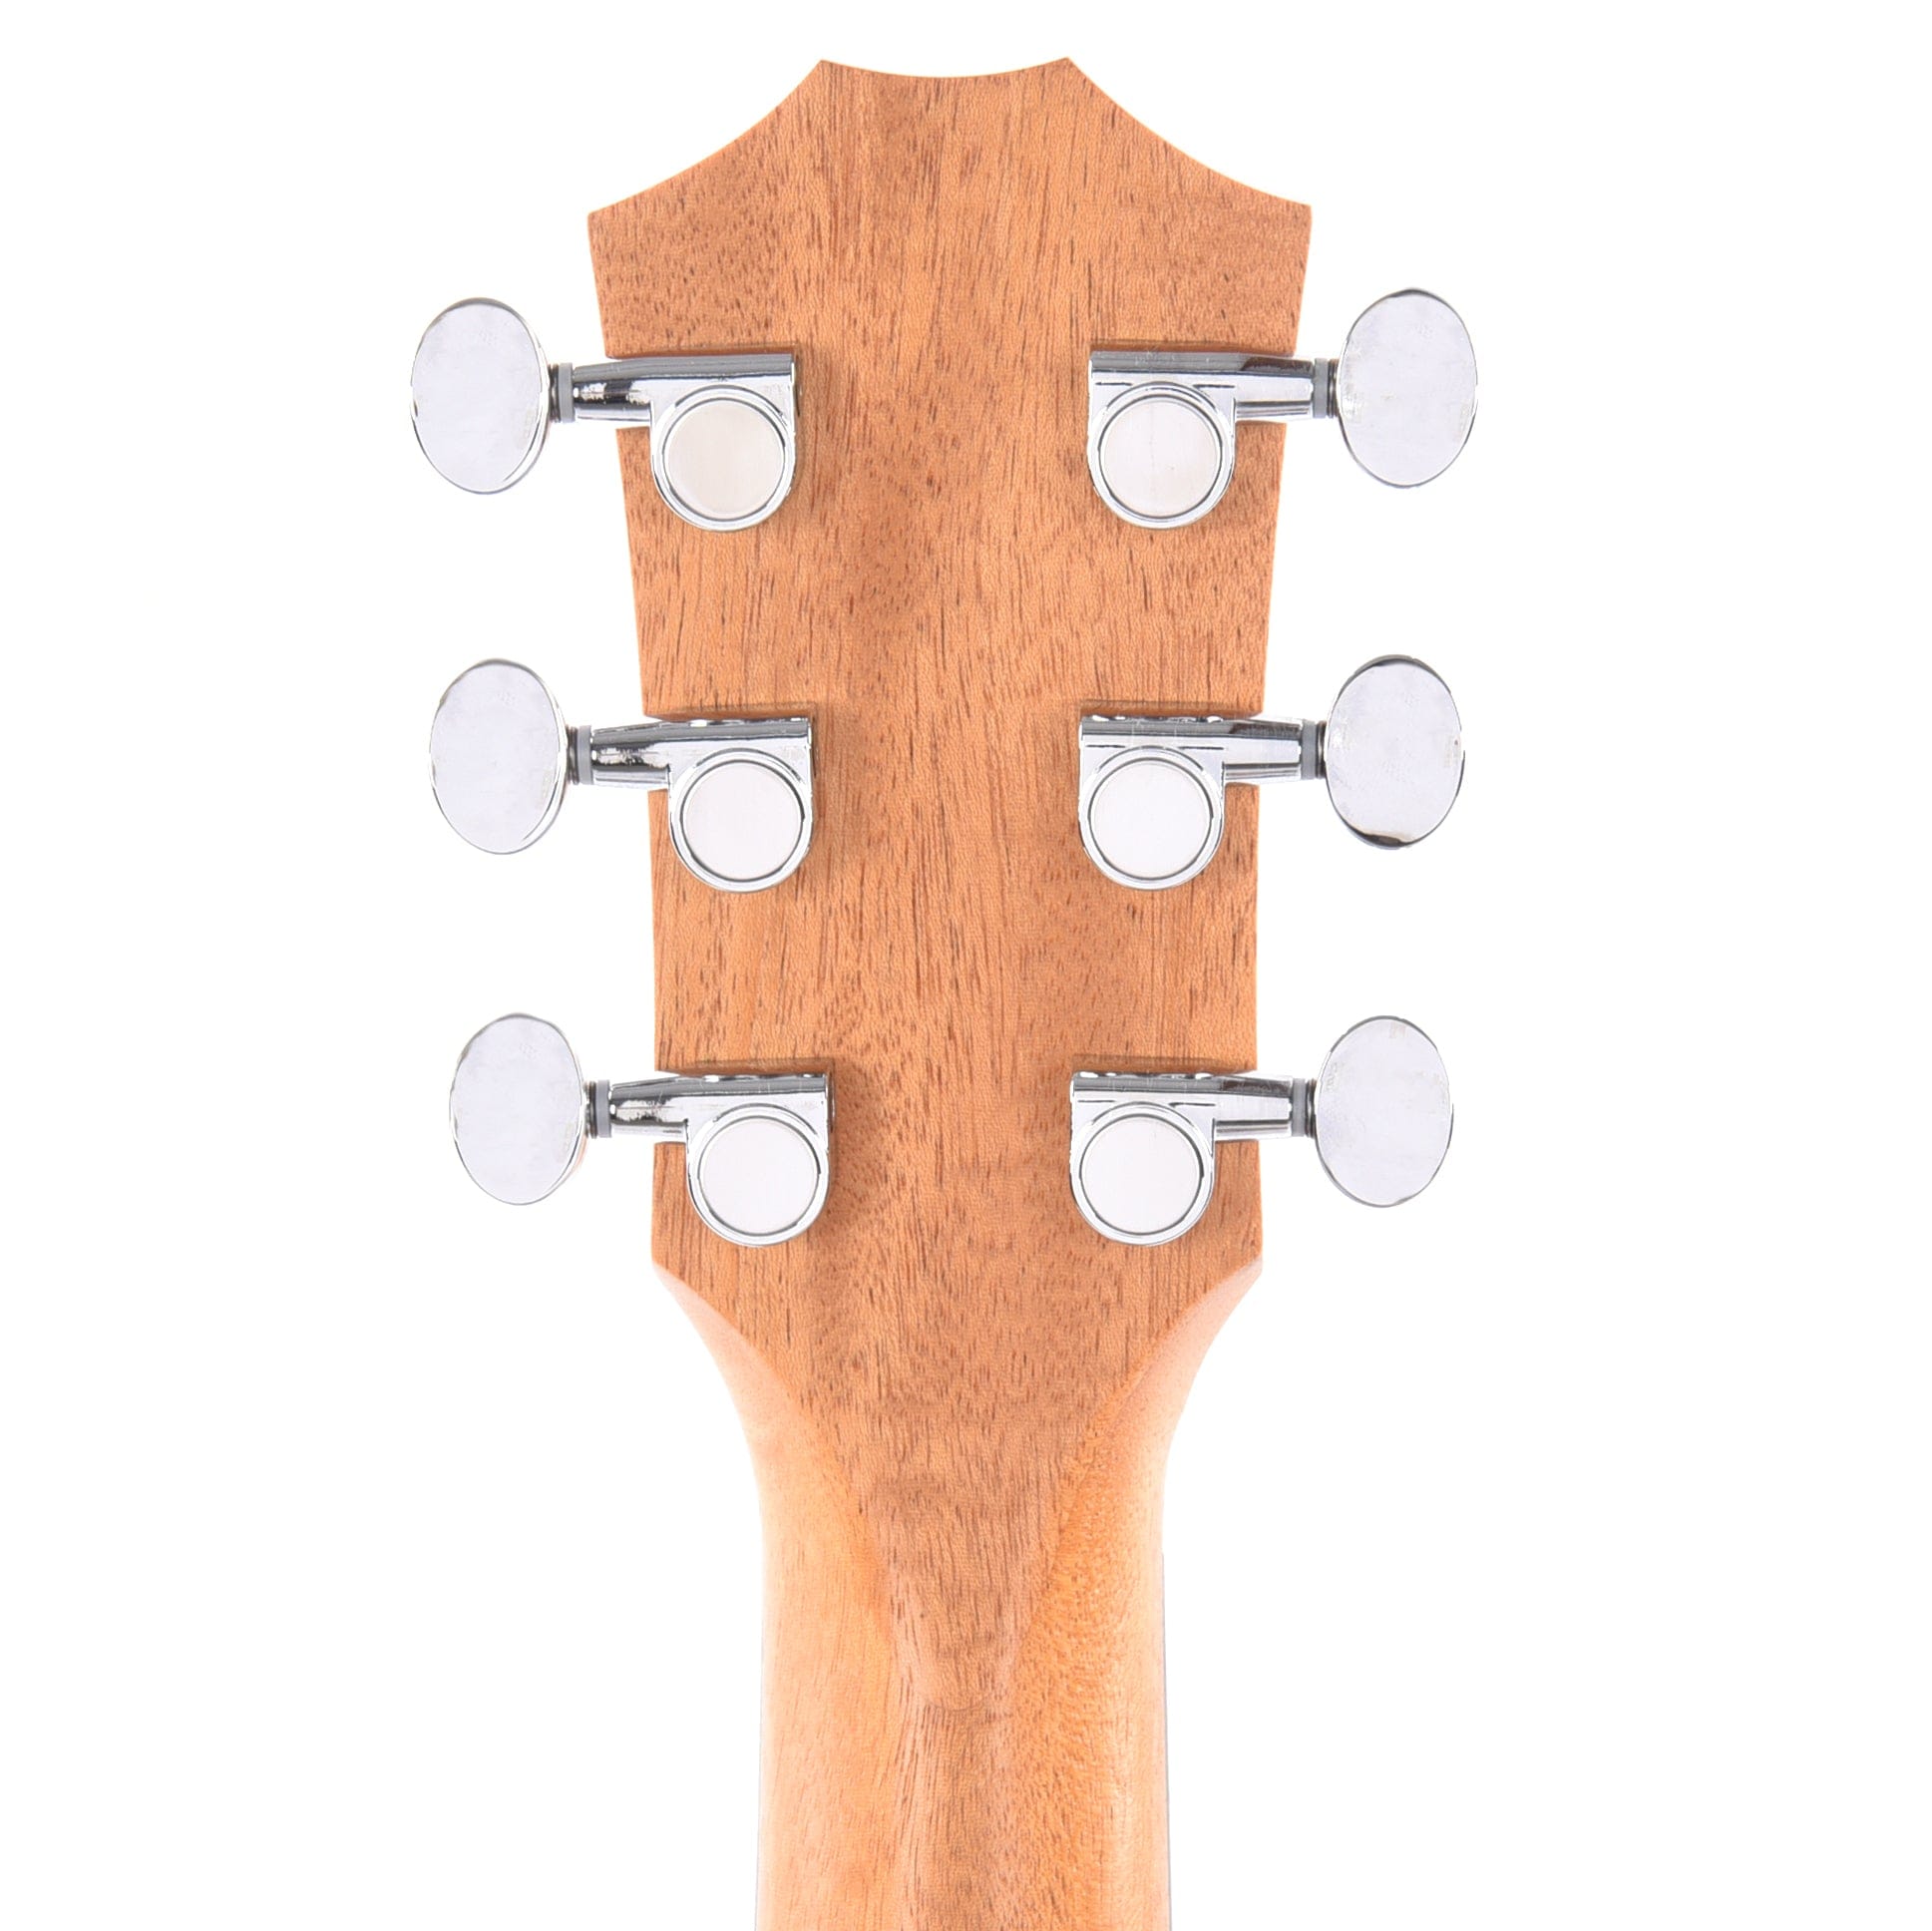 Taylor GS Mini-e Koa Natural w/ES-B Acoustic Guitars / Mini/Travel